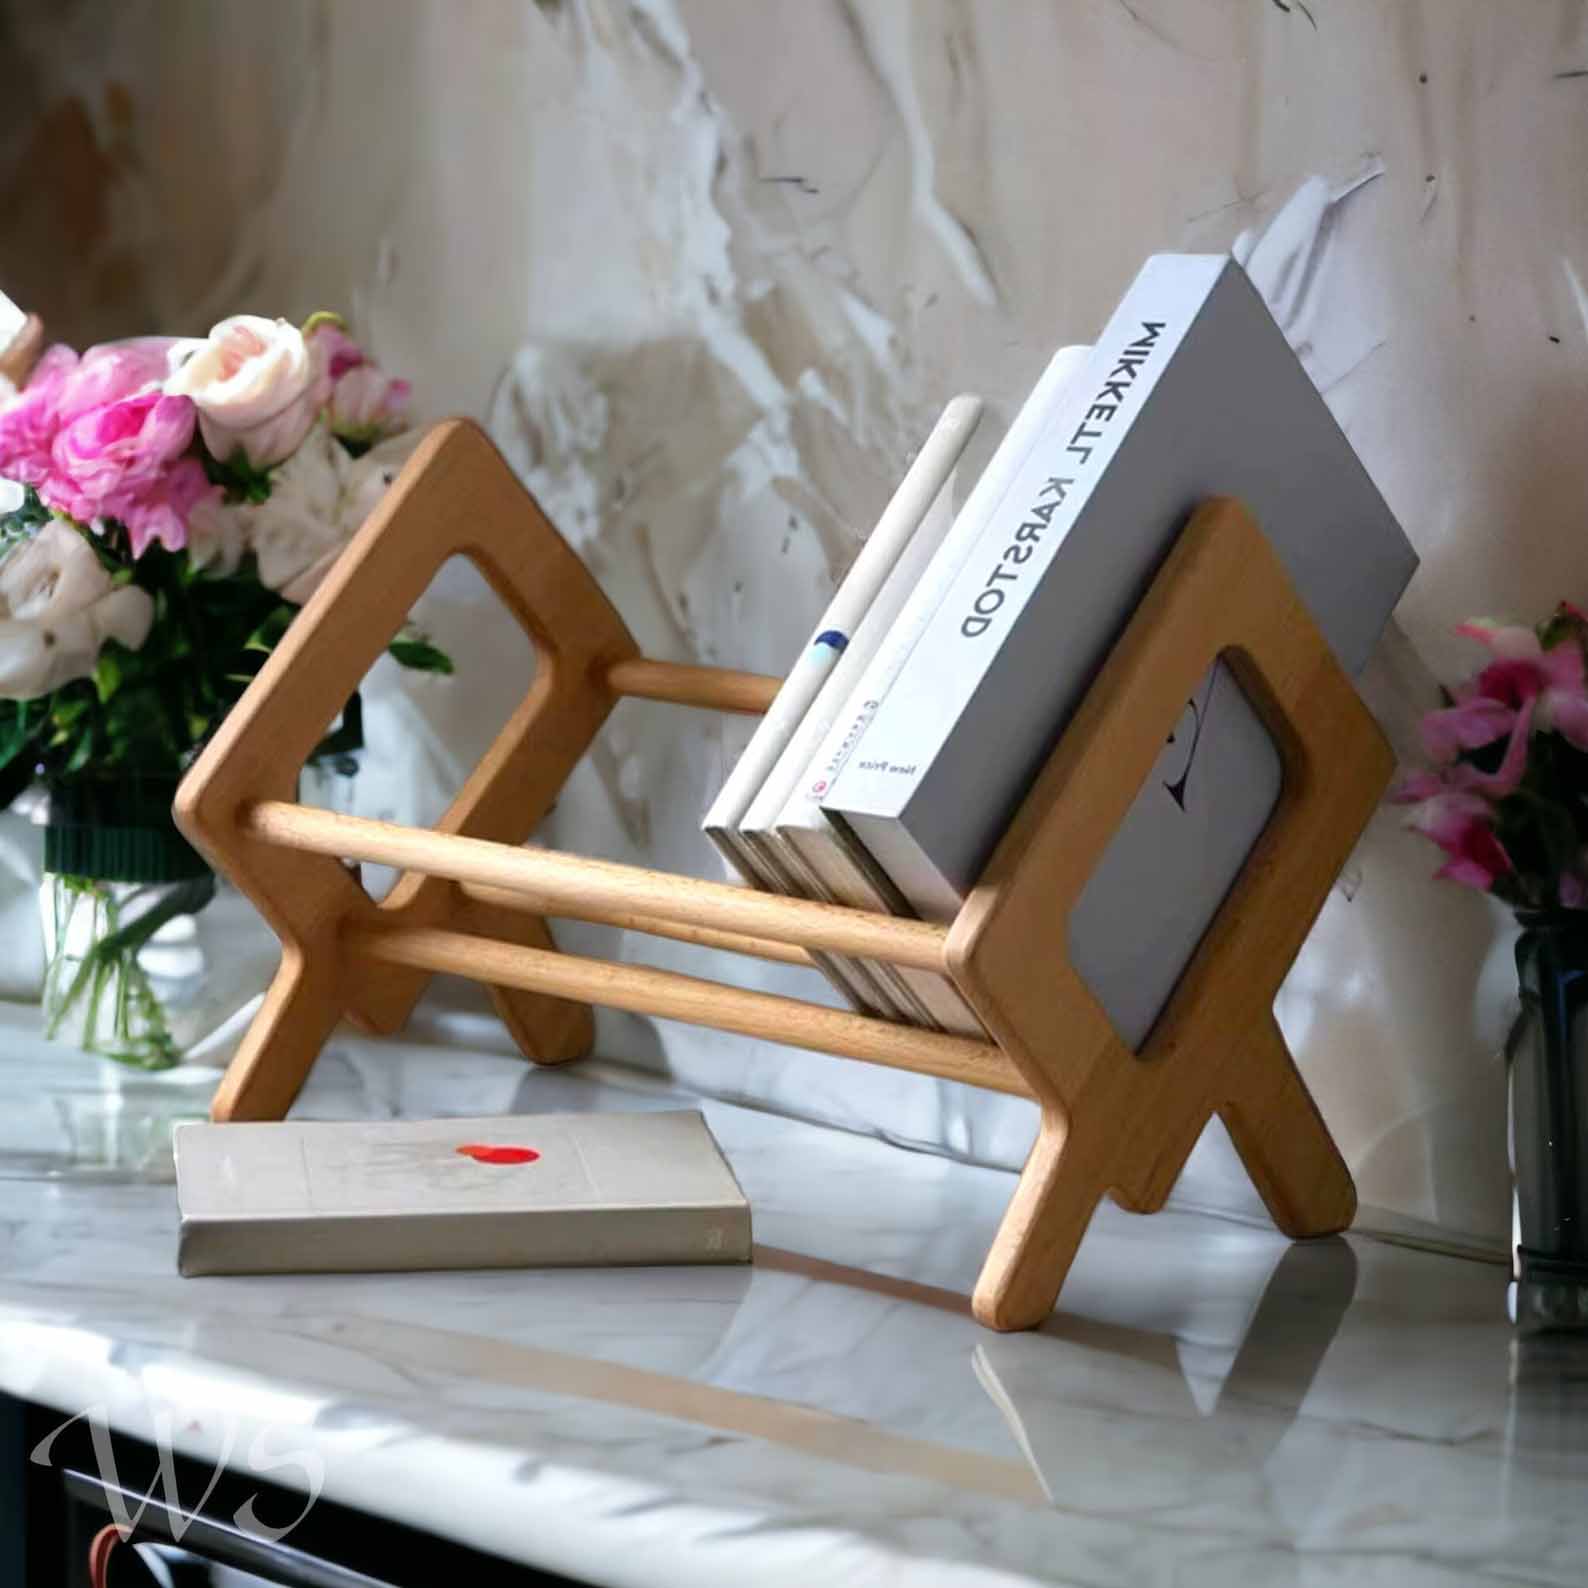 Modern Gift Idea - A wooden tabletop bookshelf.